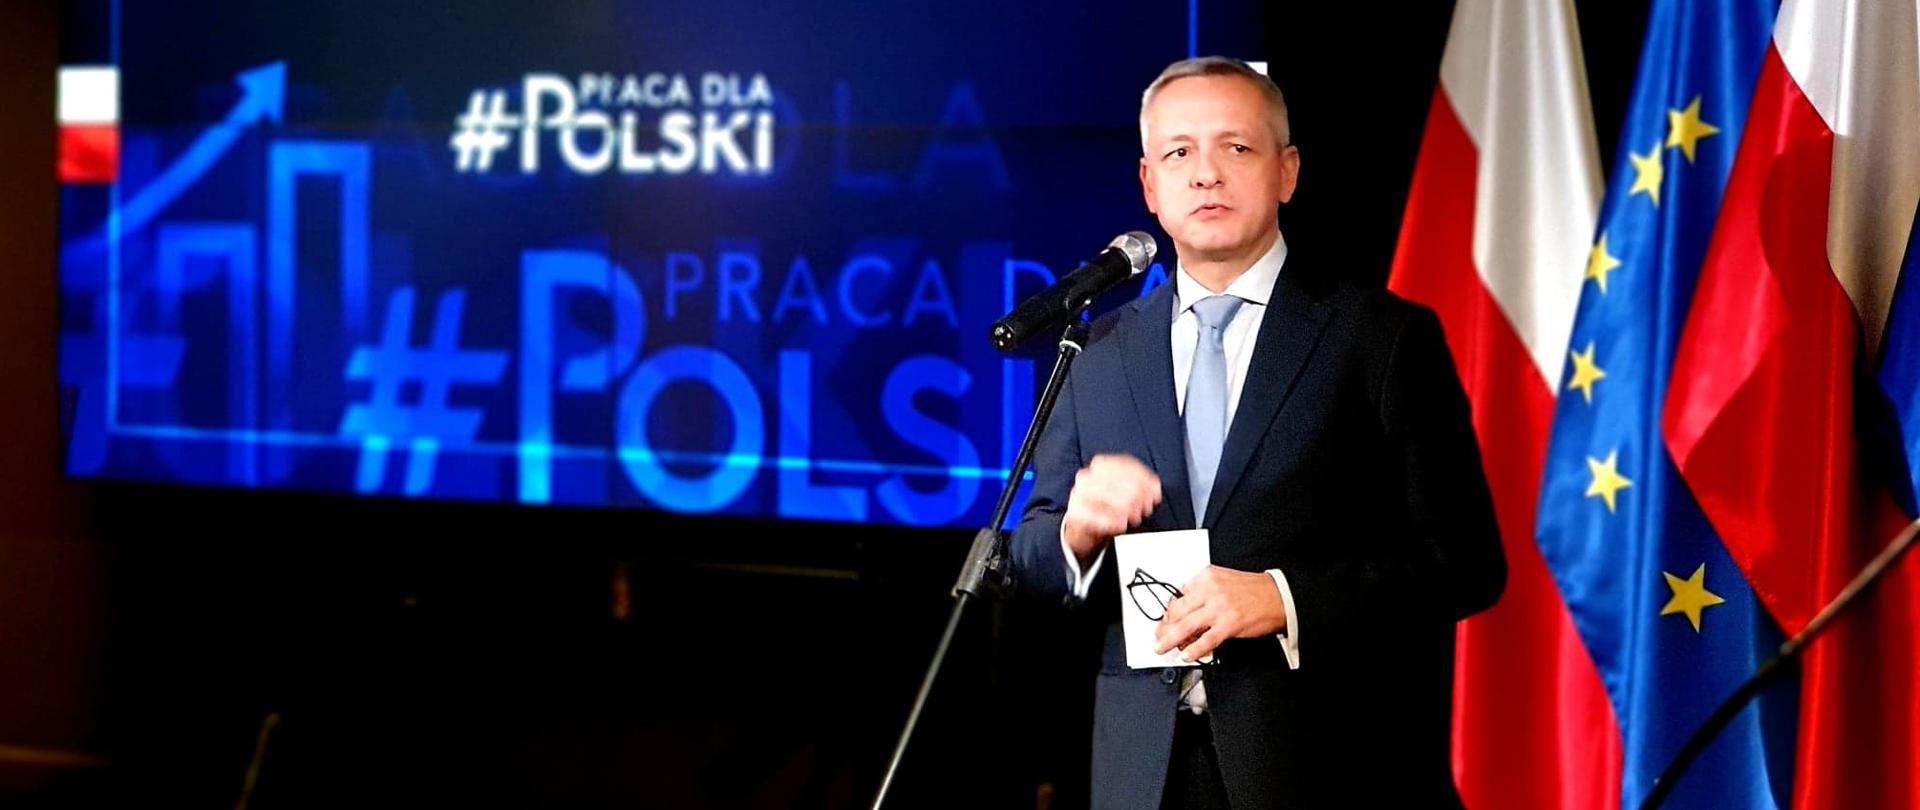 Minister cyfryzacji, Marek Zagórski, podczas konferencji prasowej przemawia do mikrofonu. W tle prezentacja multimedialna oraz flagi Polski i UE.